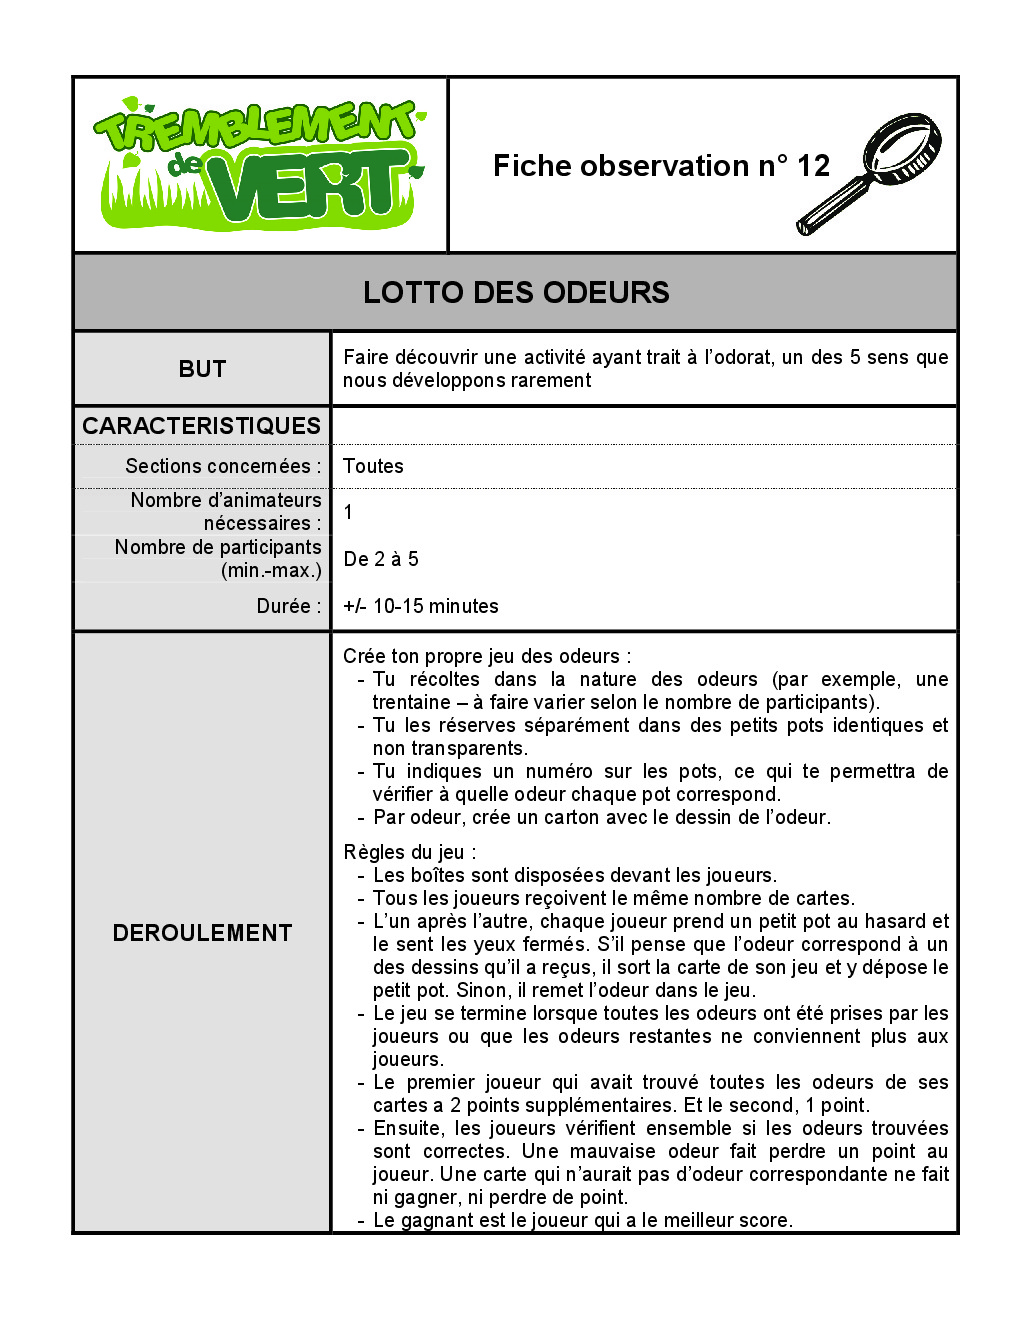 FT_TV_OBS_12_lotto_des_odeurs.pdf